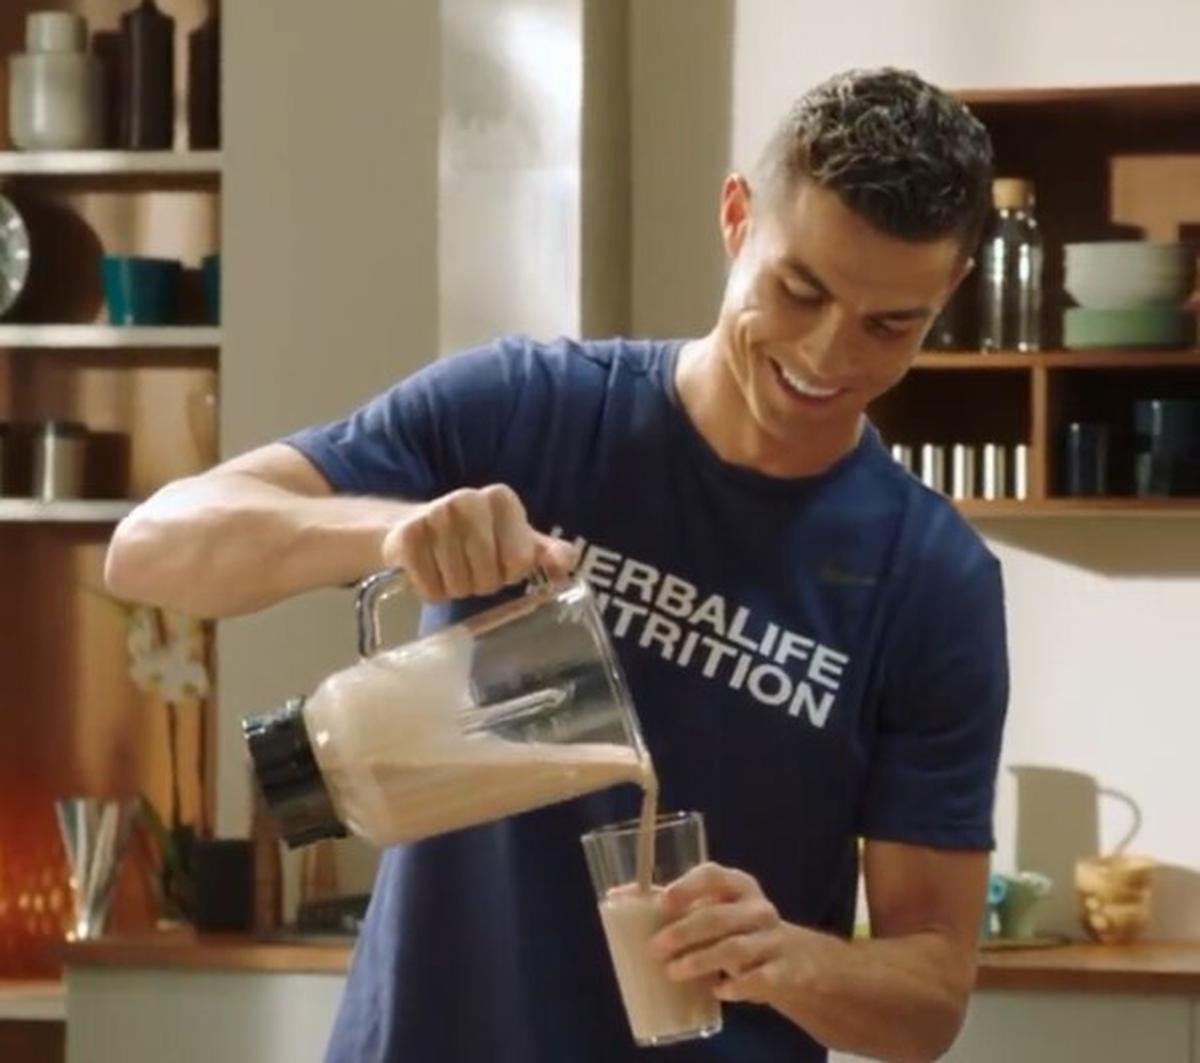 Los batidos proteicos de Cristiano Ronaldo | Los consume despues de cada entrenamiento, a fin de nutrir sus músculos.
Foto: Redes Sociales